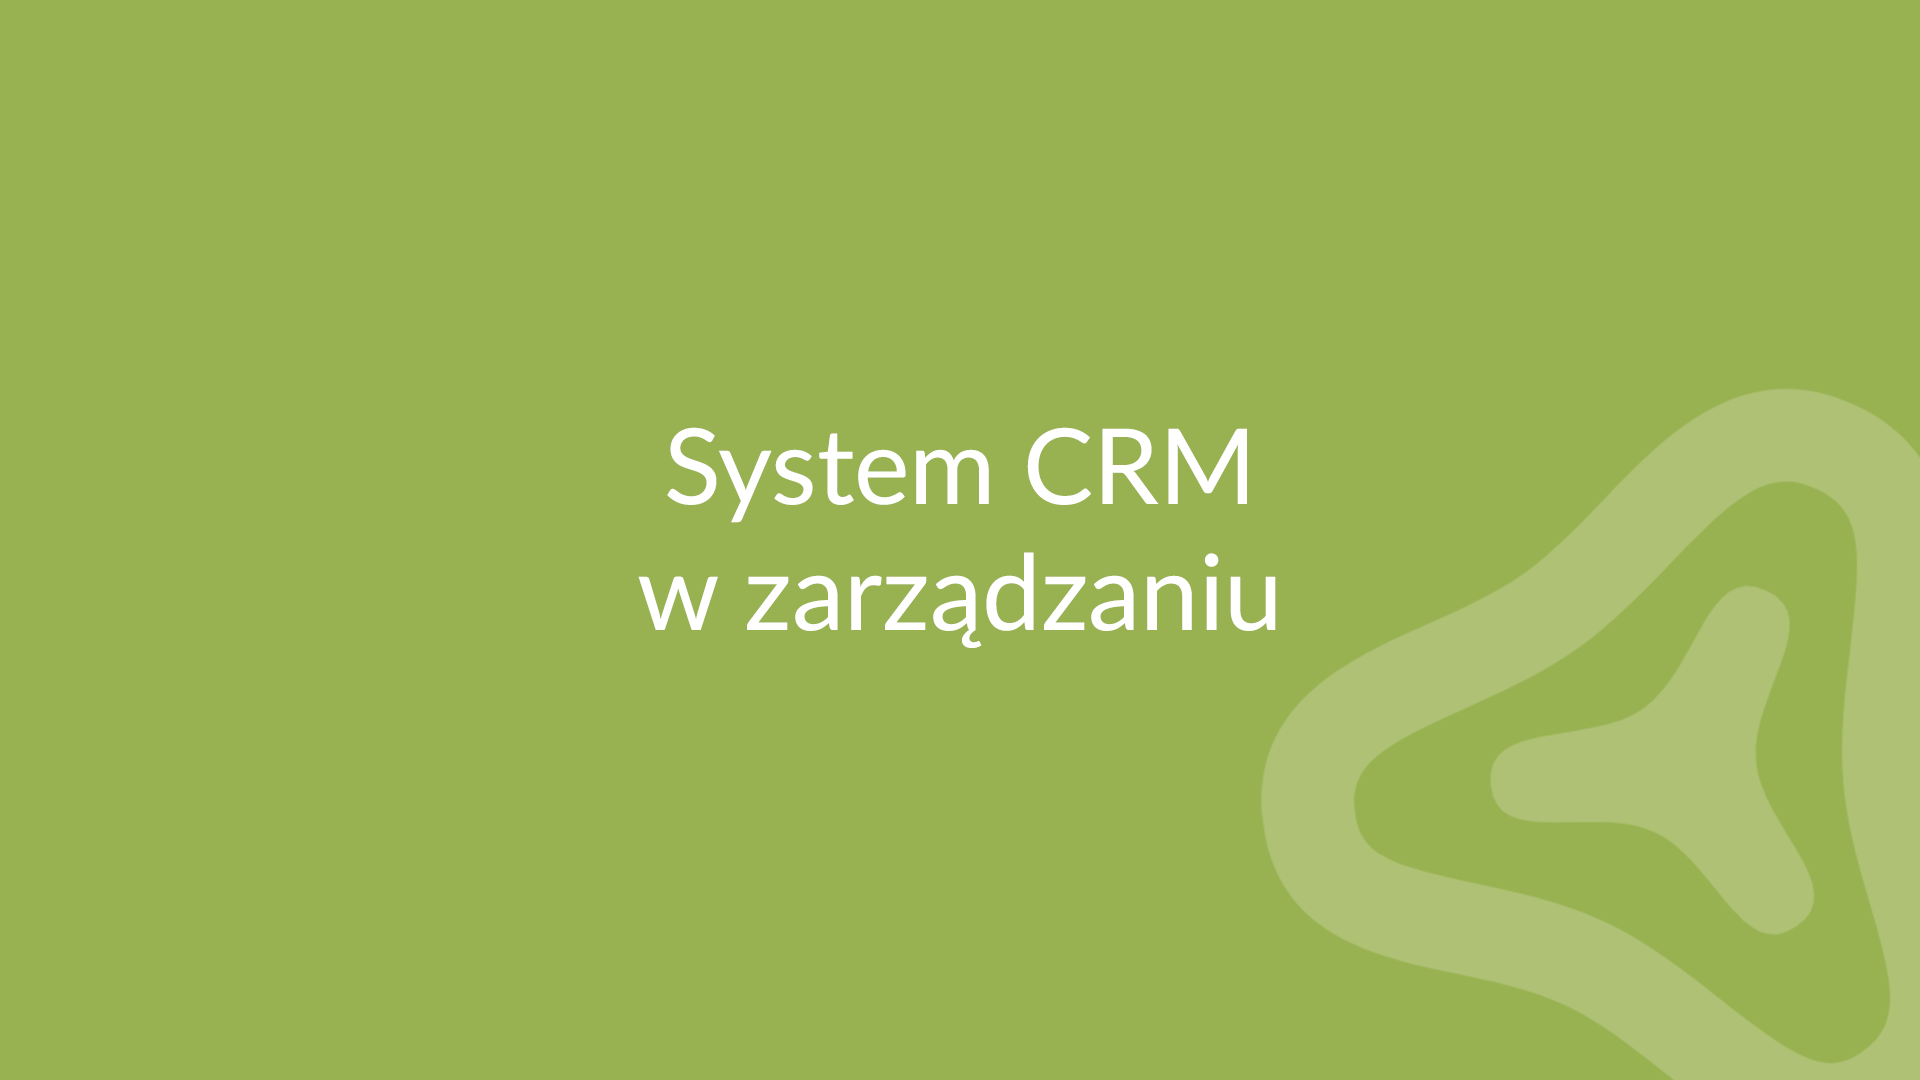 Najpopularniejszych 5 funkcji w systemach CRM dla firm - RANKING 2020